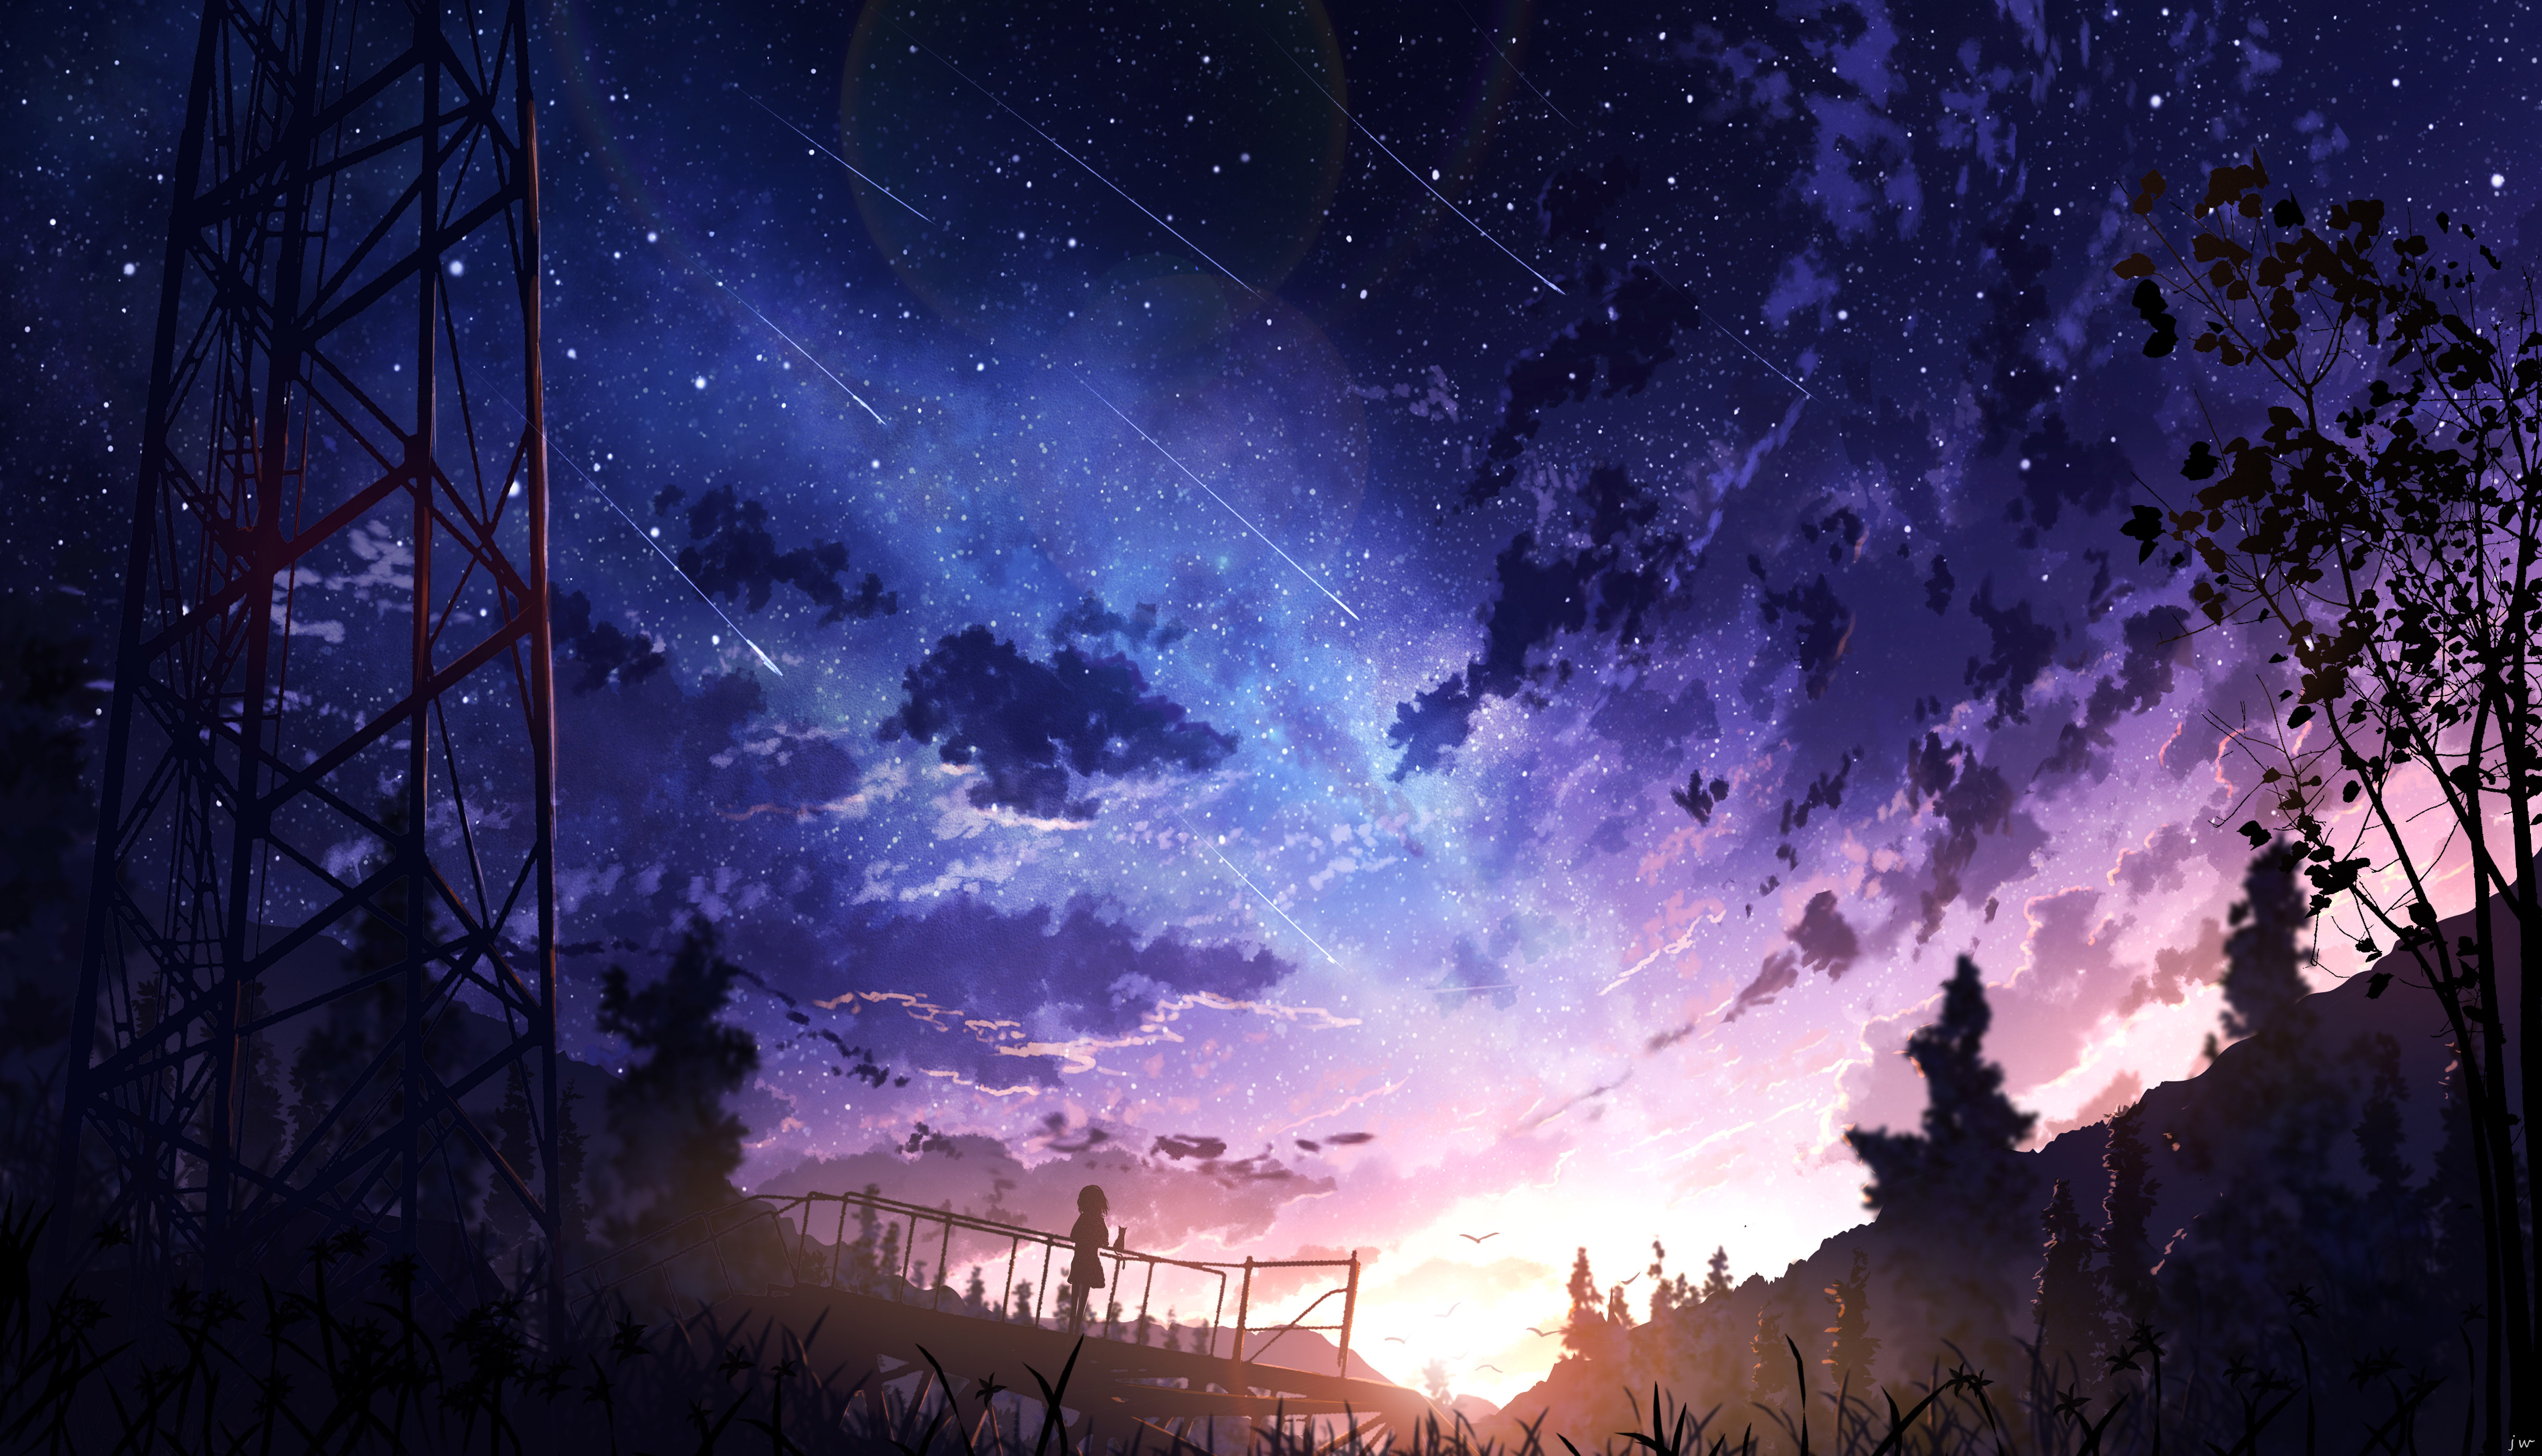 Anime Landscape Anime Girls Sunset Pixiv Fantasia Sky Stars Meteors 4872x2791